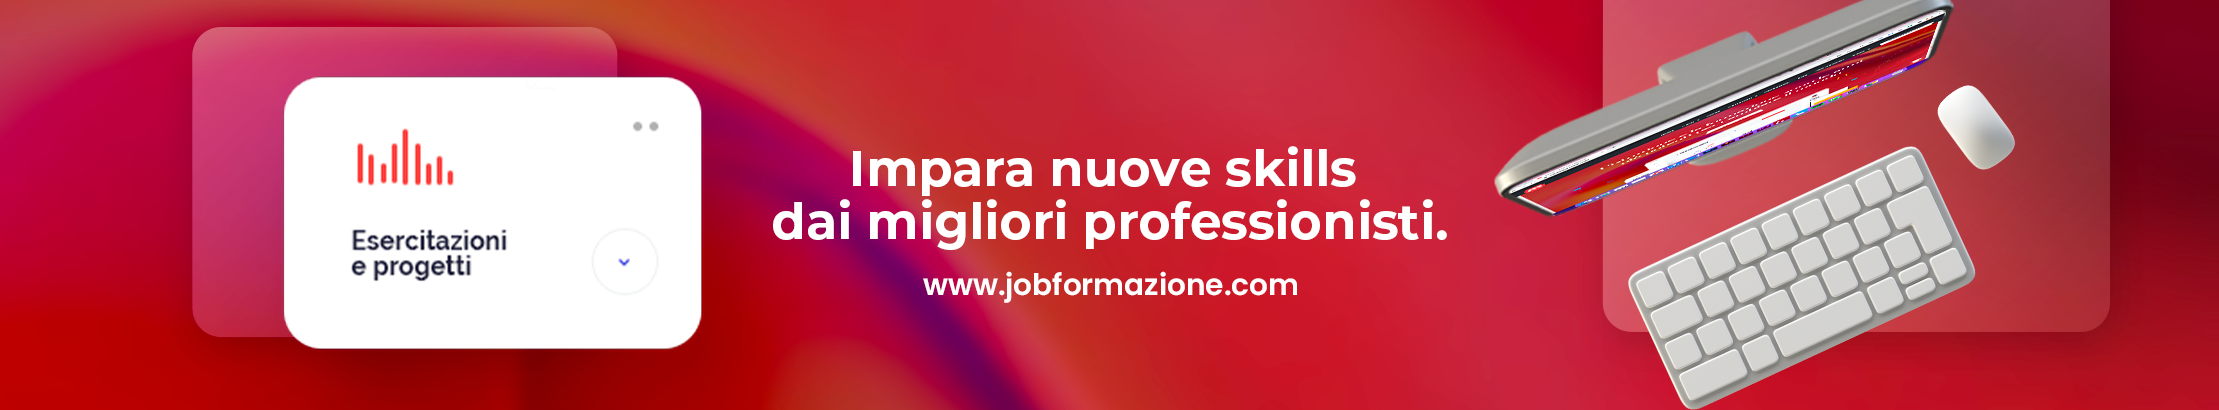 Job Formazione's profile banner